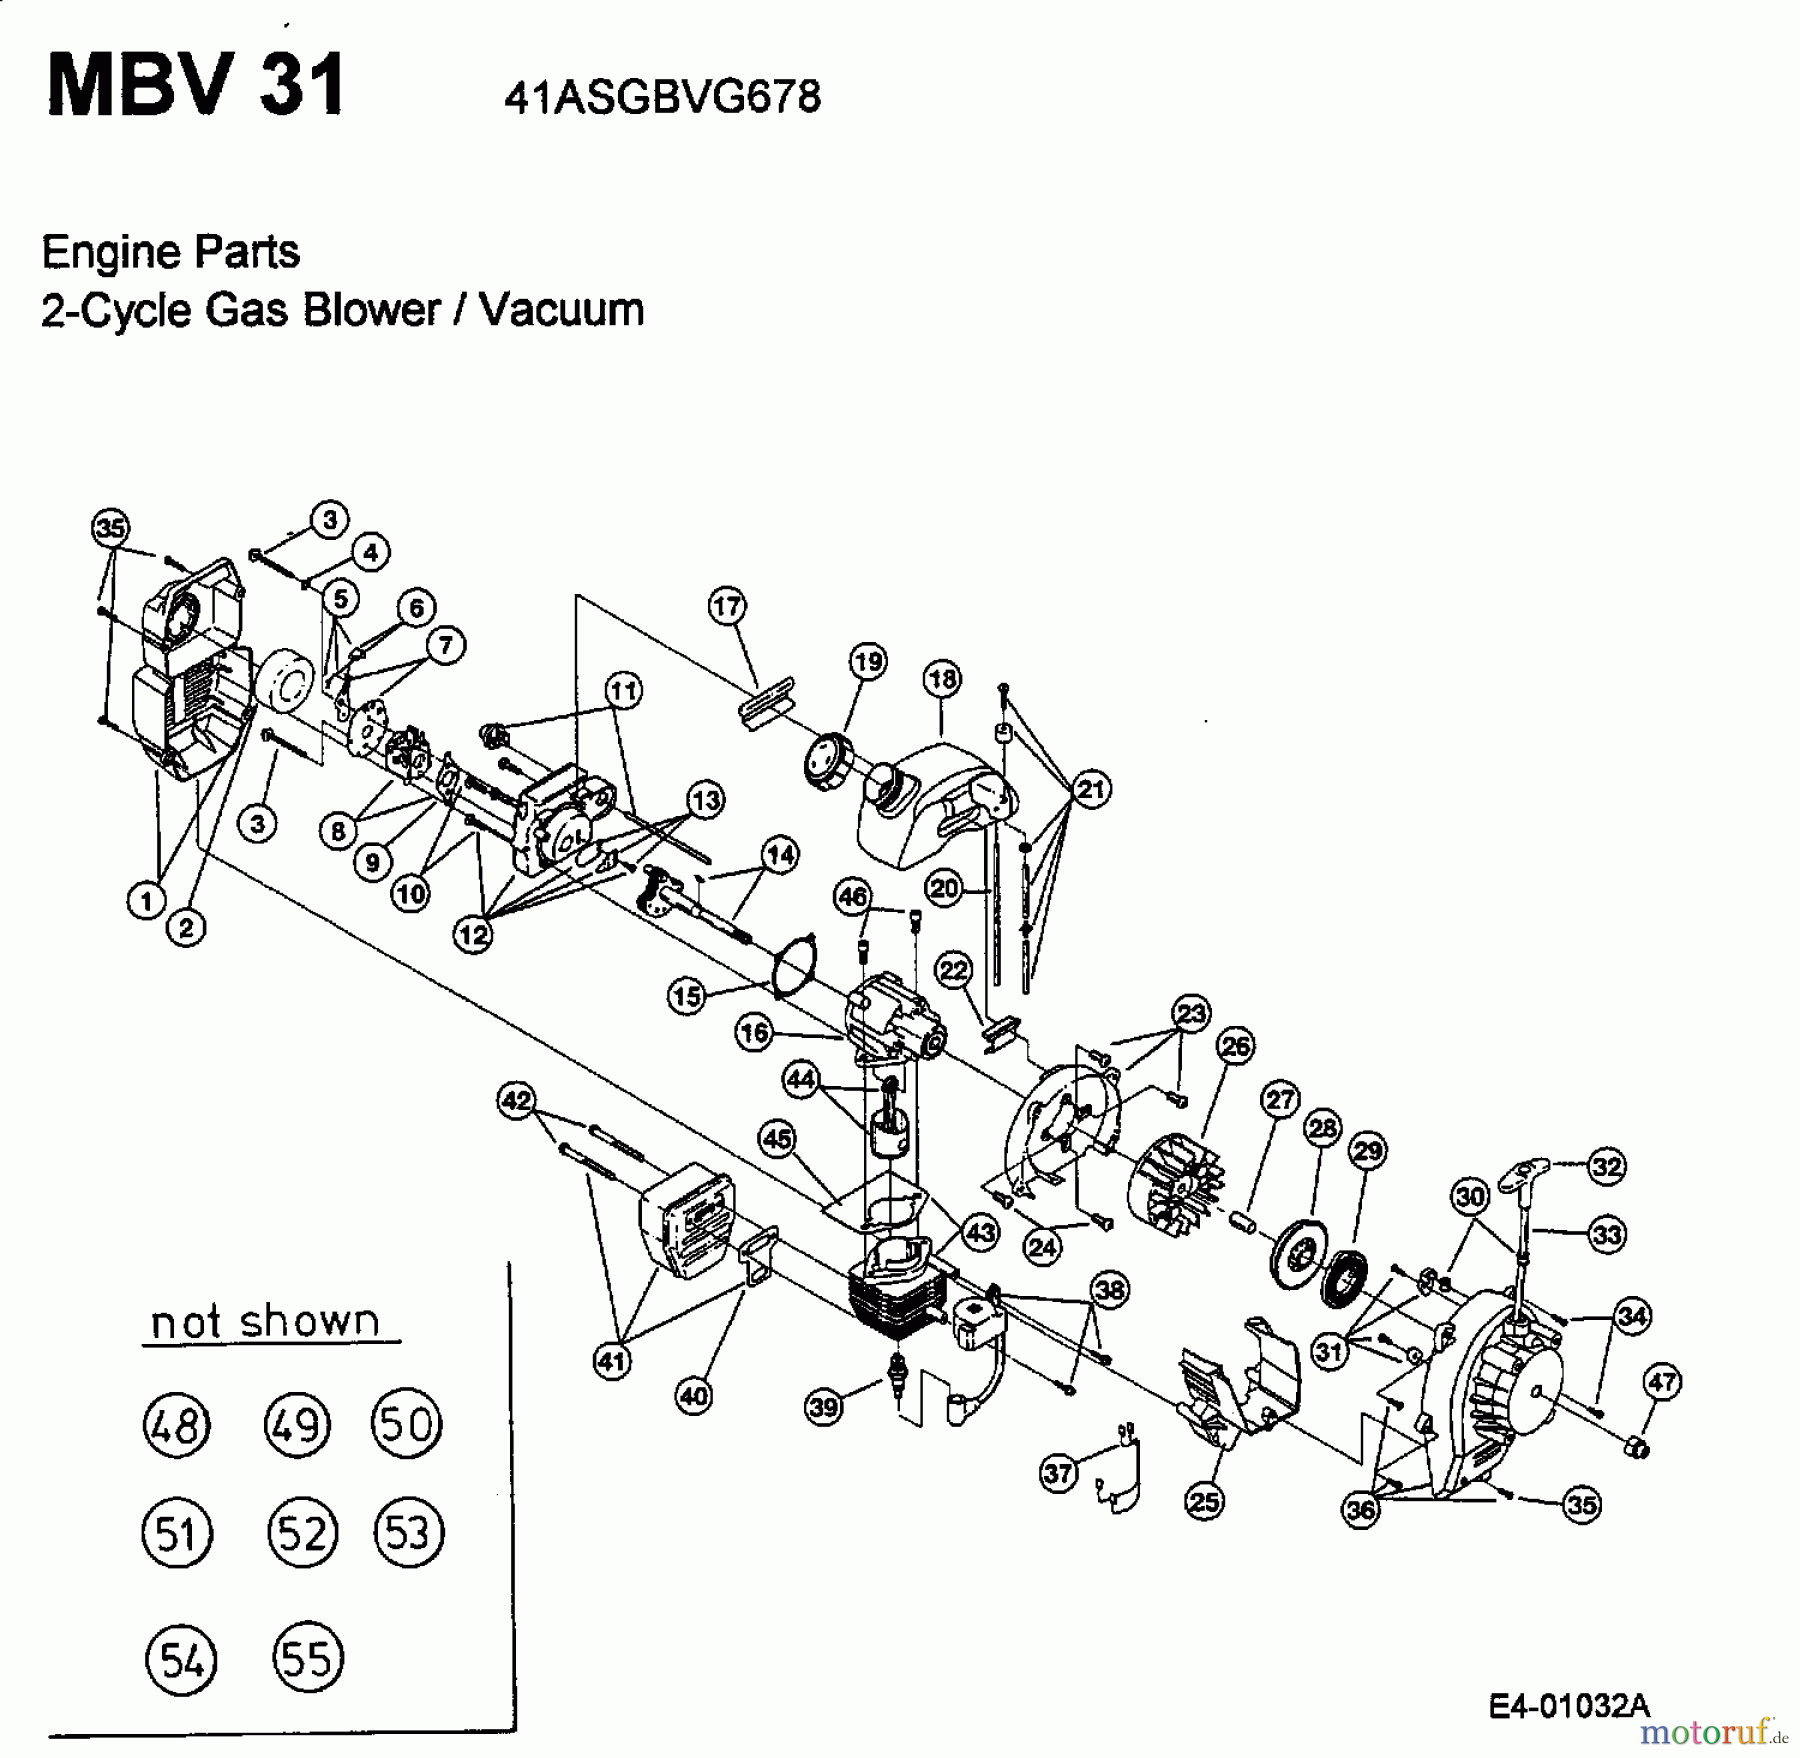  MTD Leaf blower, Blower vac MBV 31 41ASGBVG678  (2002) Engine